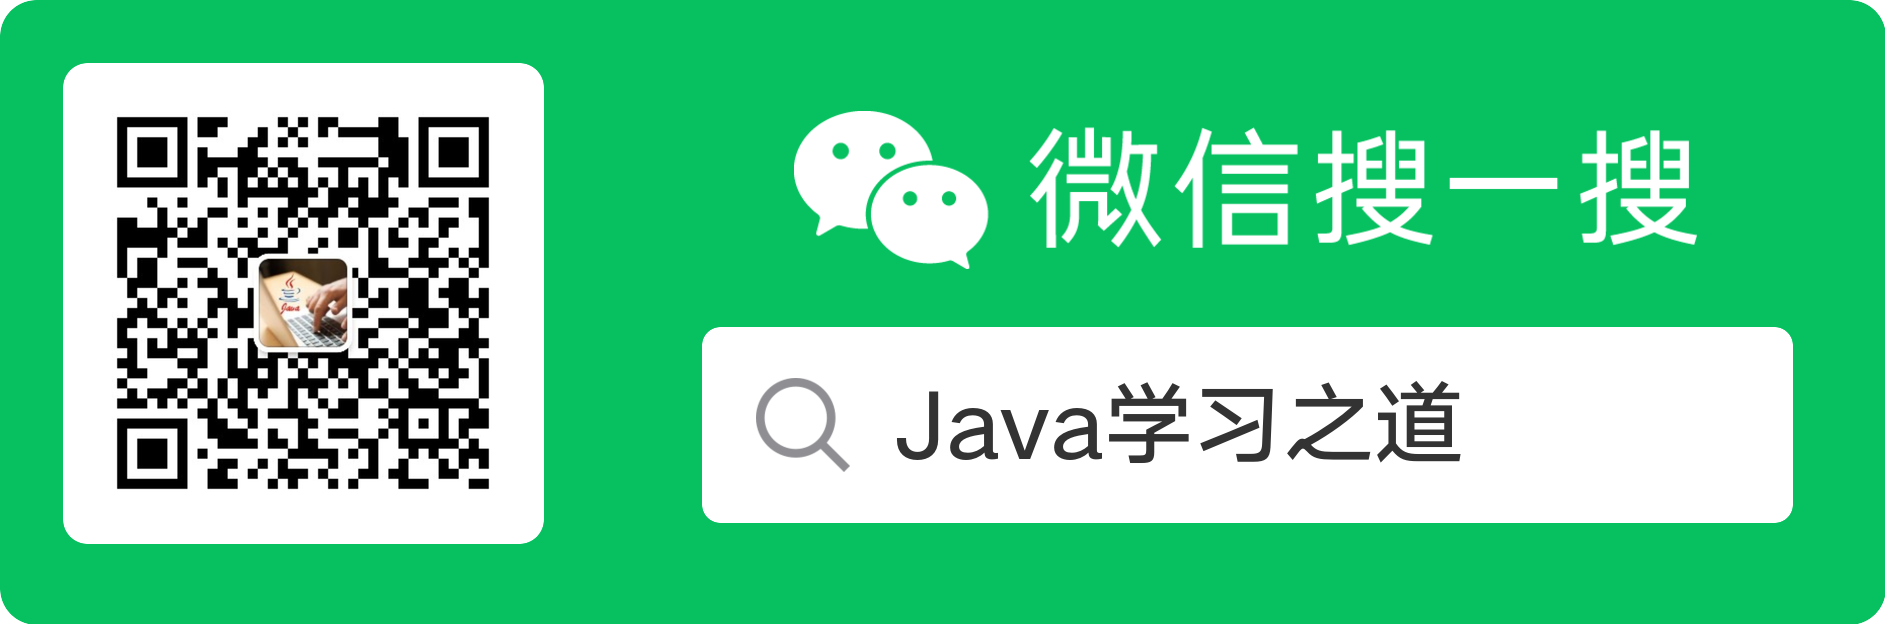 微信搜一搜 Java 学习之道